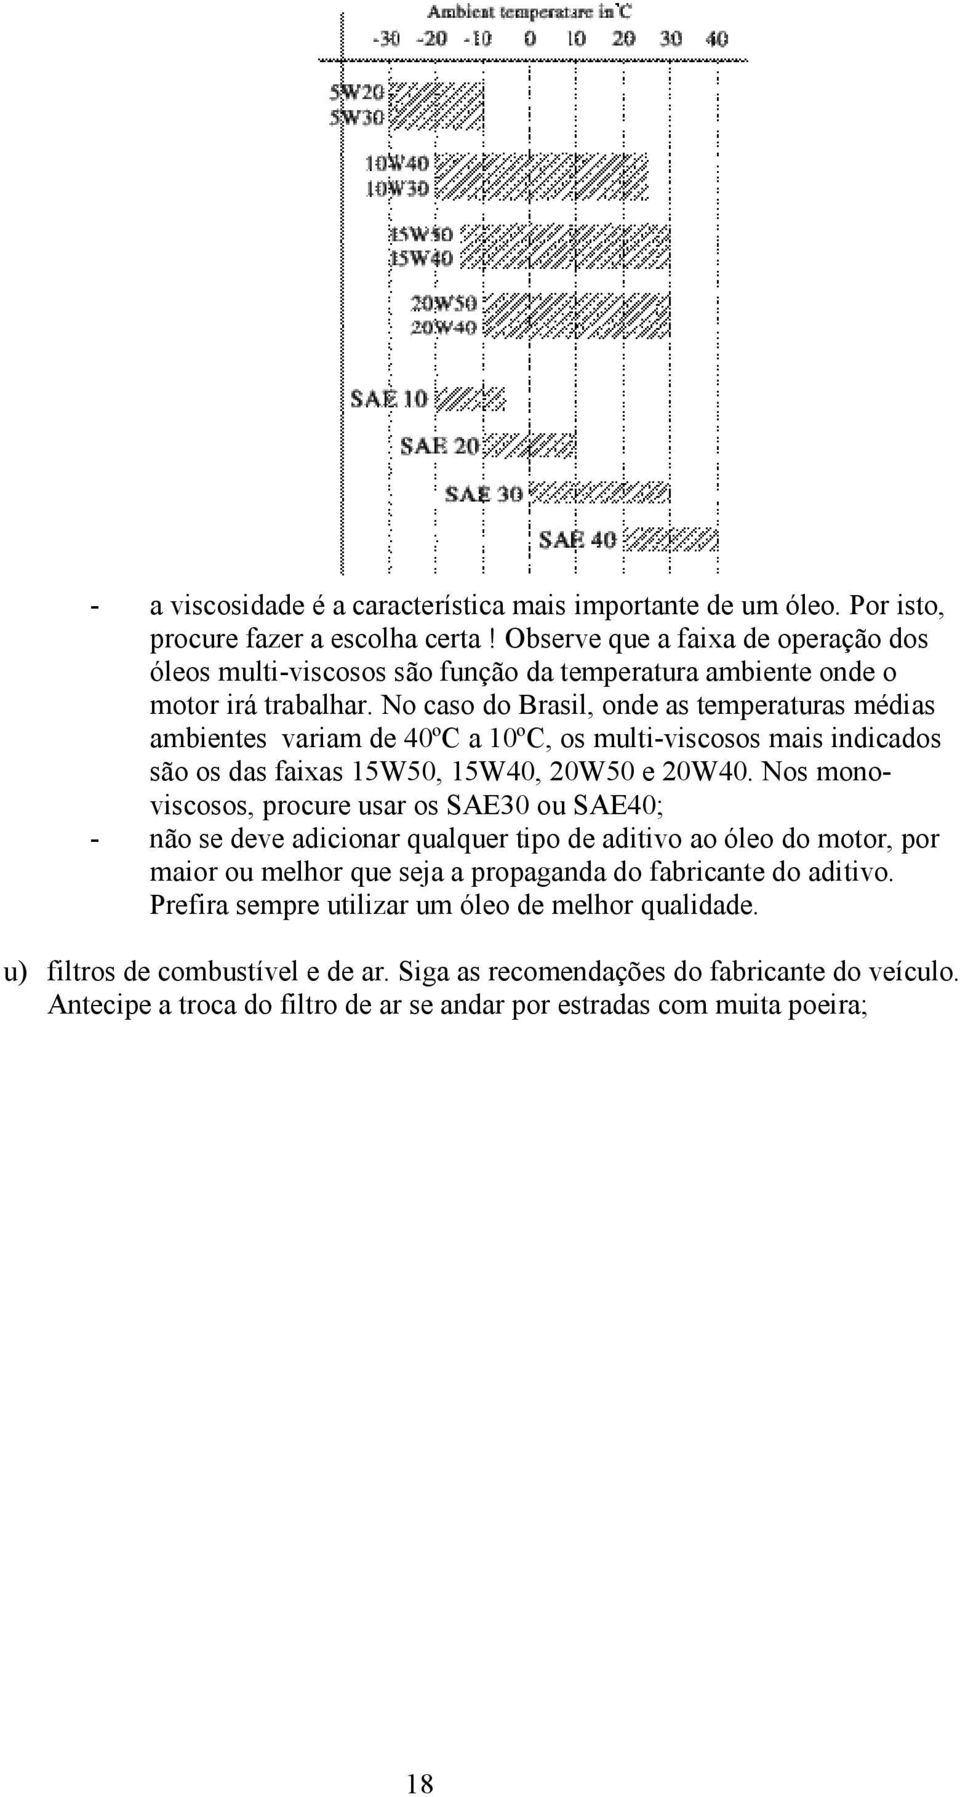 No caso do Brasil, onde as temperaturas médias ambientes variam de 40ºC a 10ºC, os multi-viscosos mais indicados são os das faixas 15W50, 15W40, 20W50 e 20W40.